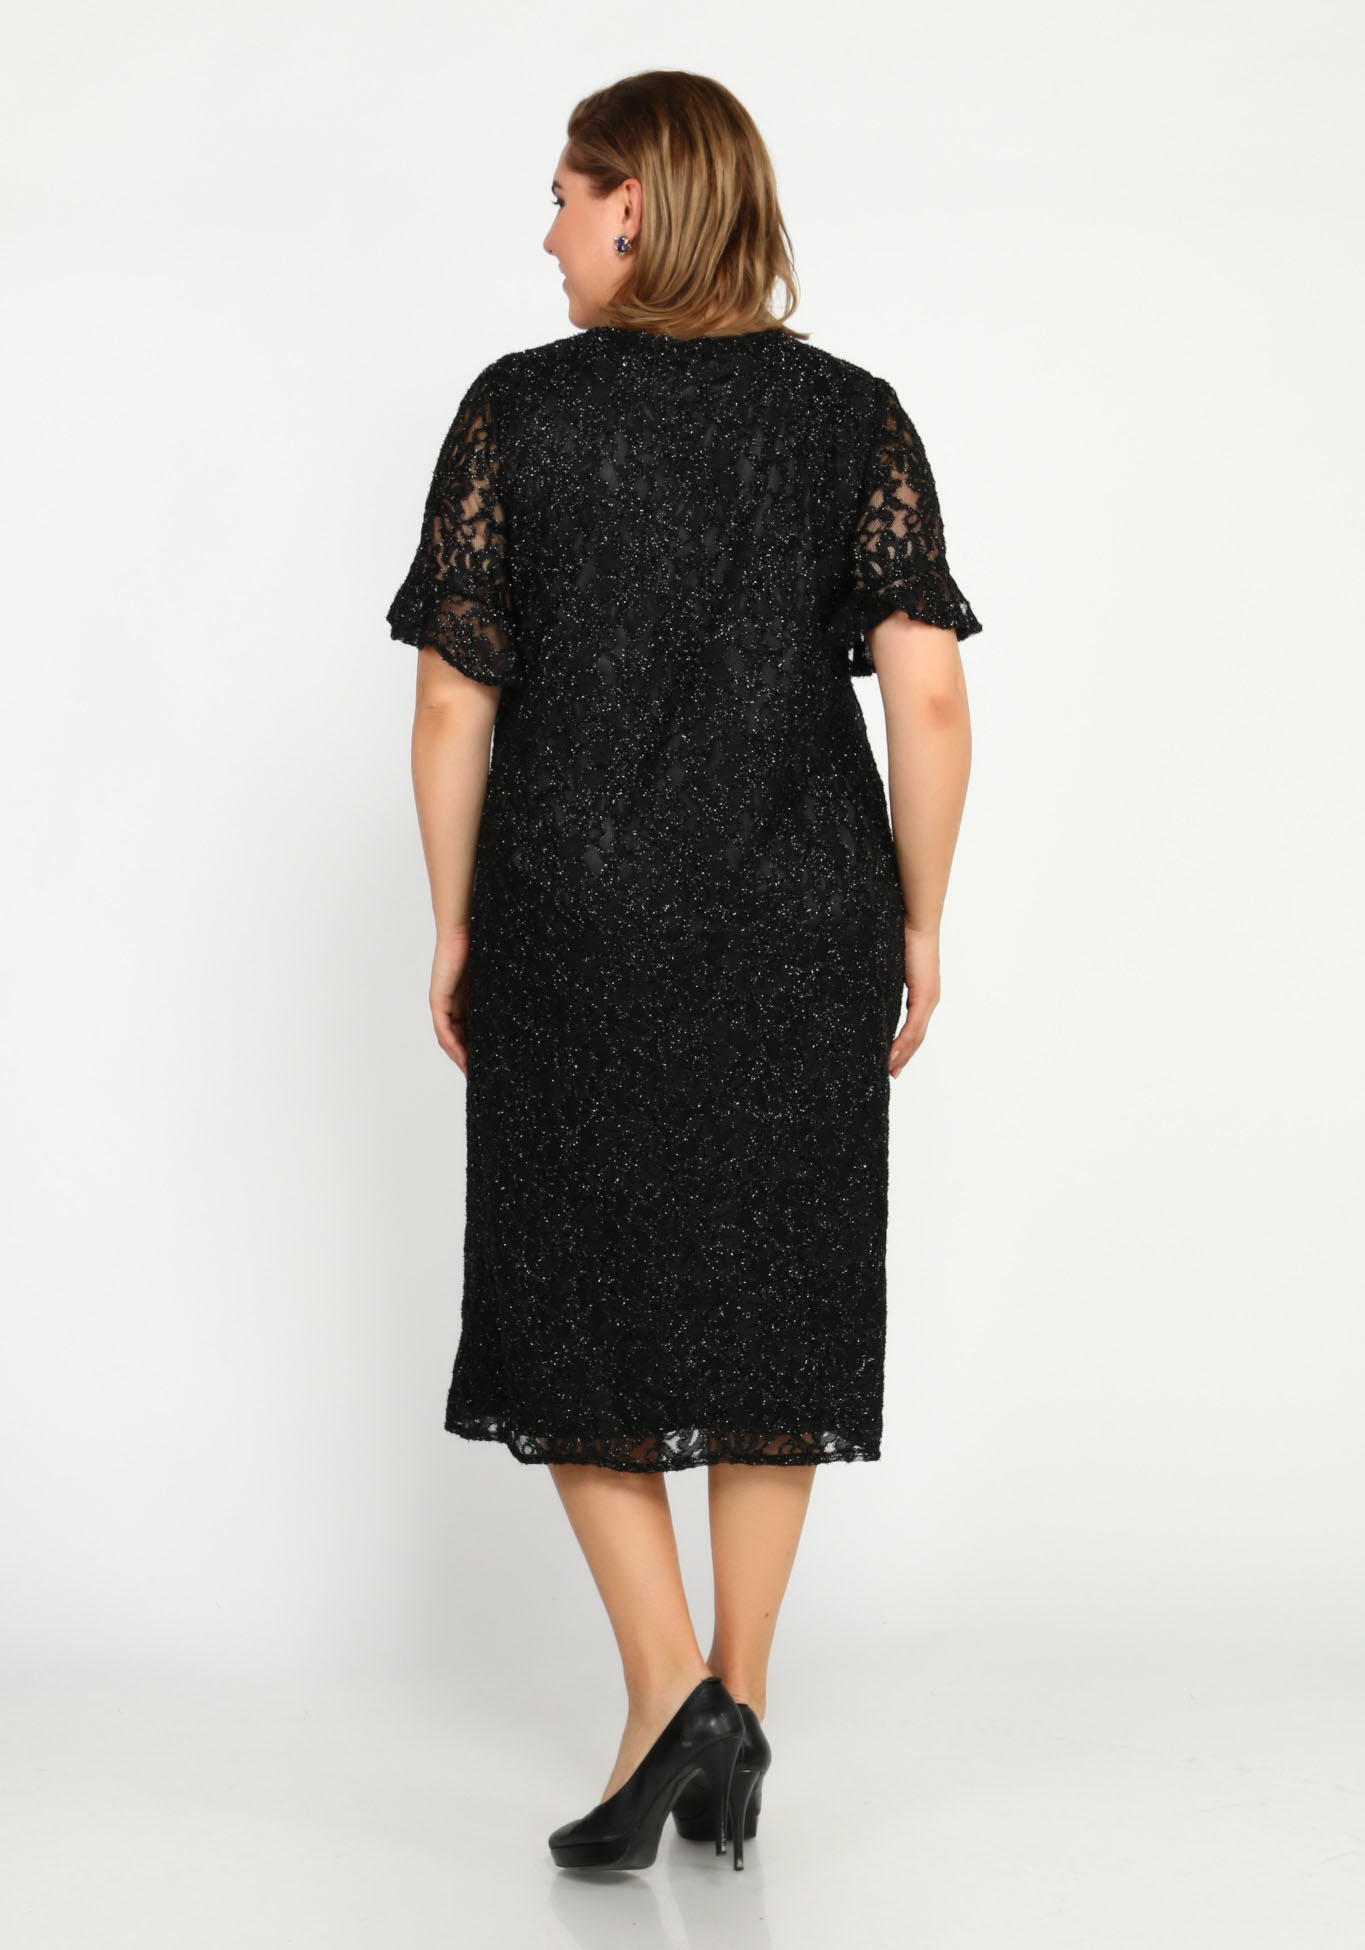 Платье с блеском и узором Bel Fiore, размер 48, цвет баклажановый - фото 4